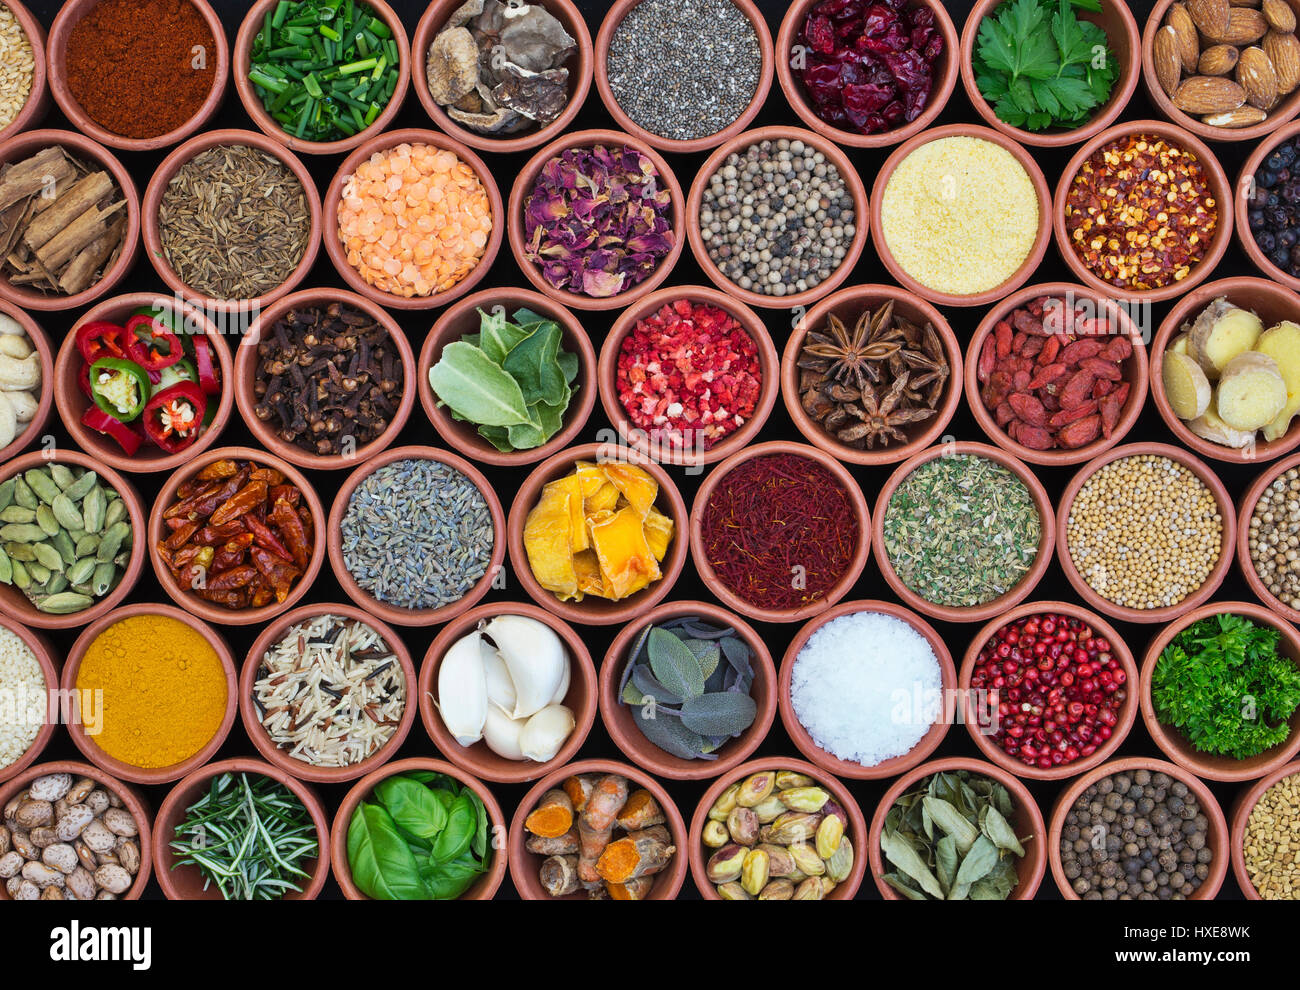 Ingrédients de cuisson. Herbes, Épices, noix, graines et légumineuses en pots de terre cuite ronde pattern Banque D'Images